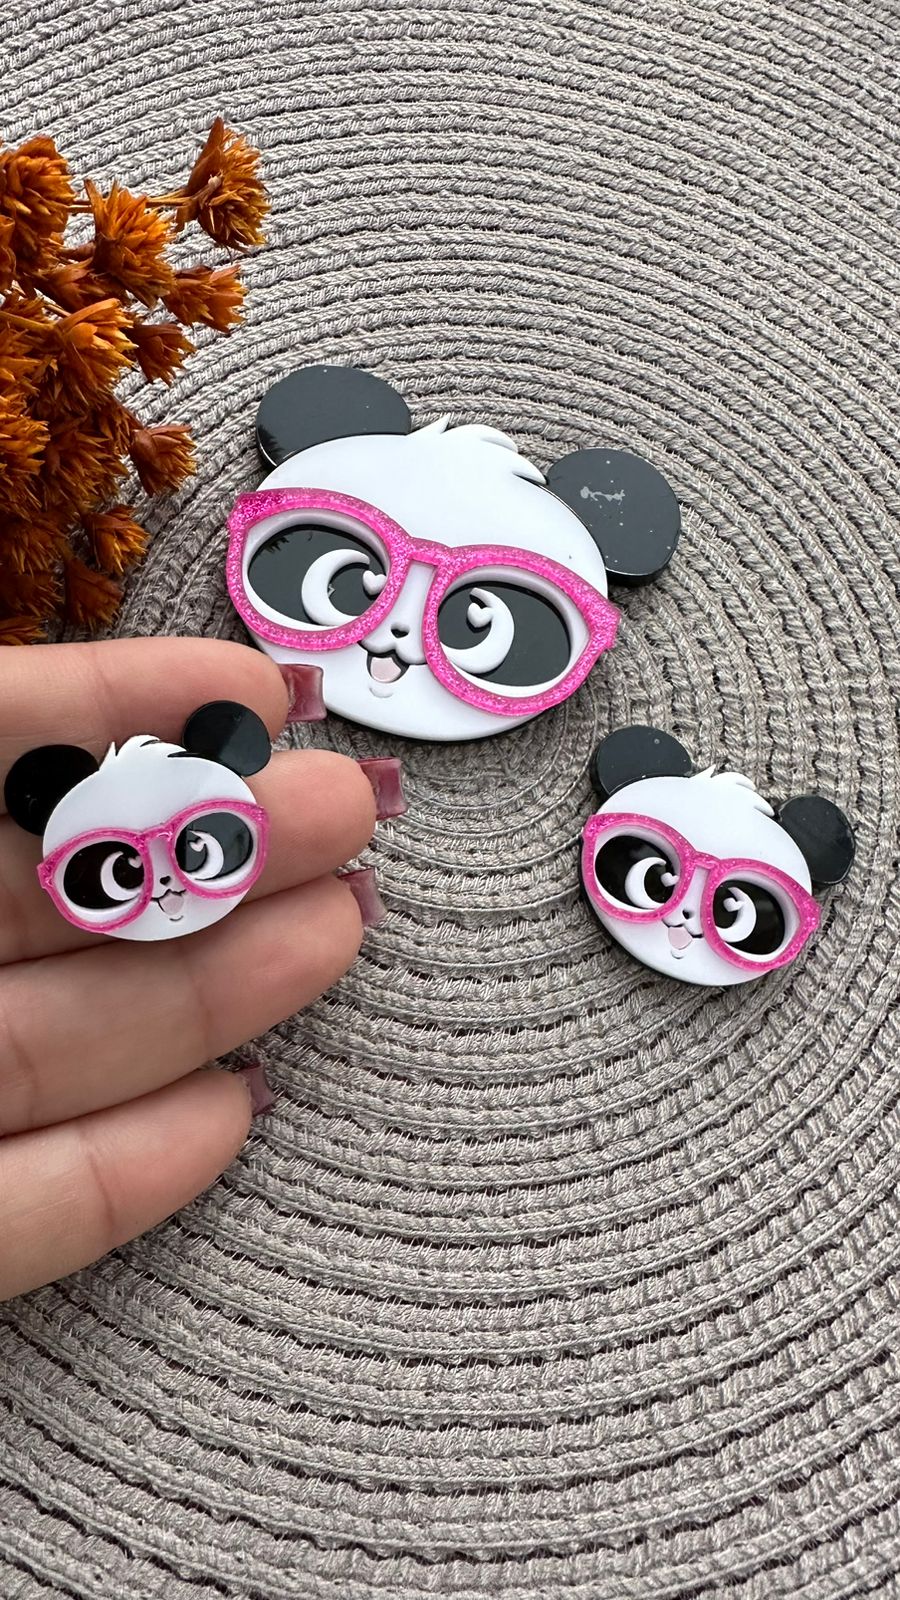 Panda da luluca imprimir